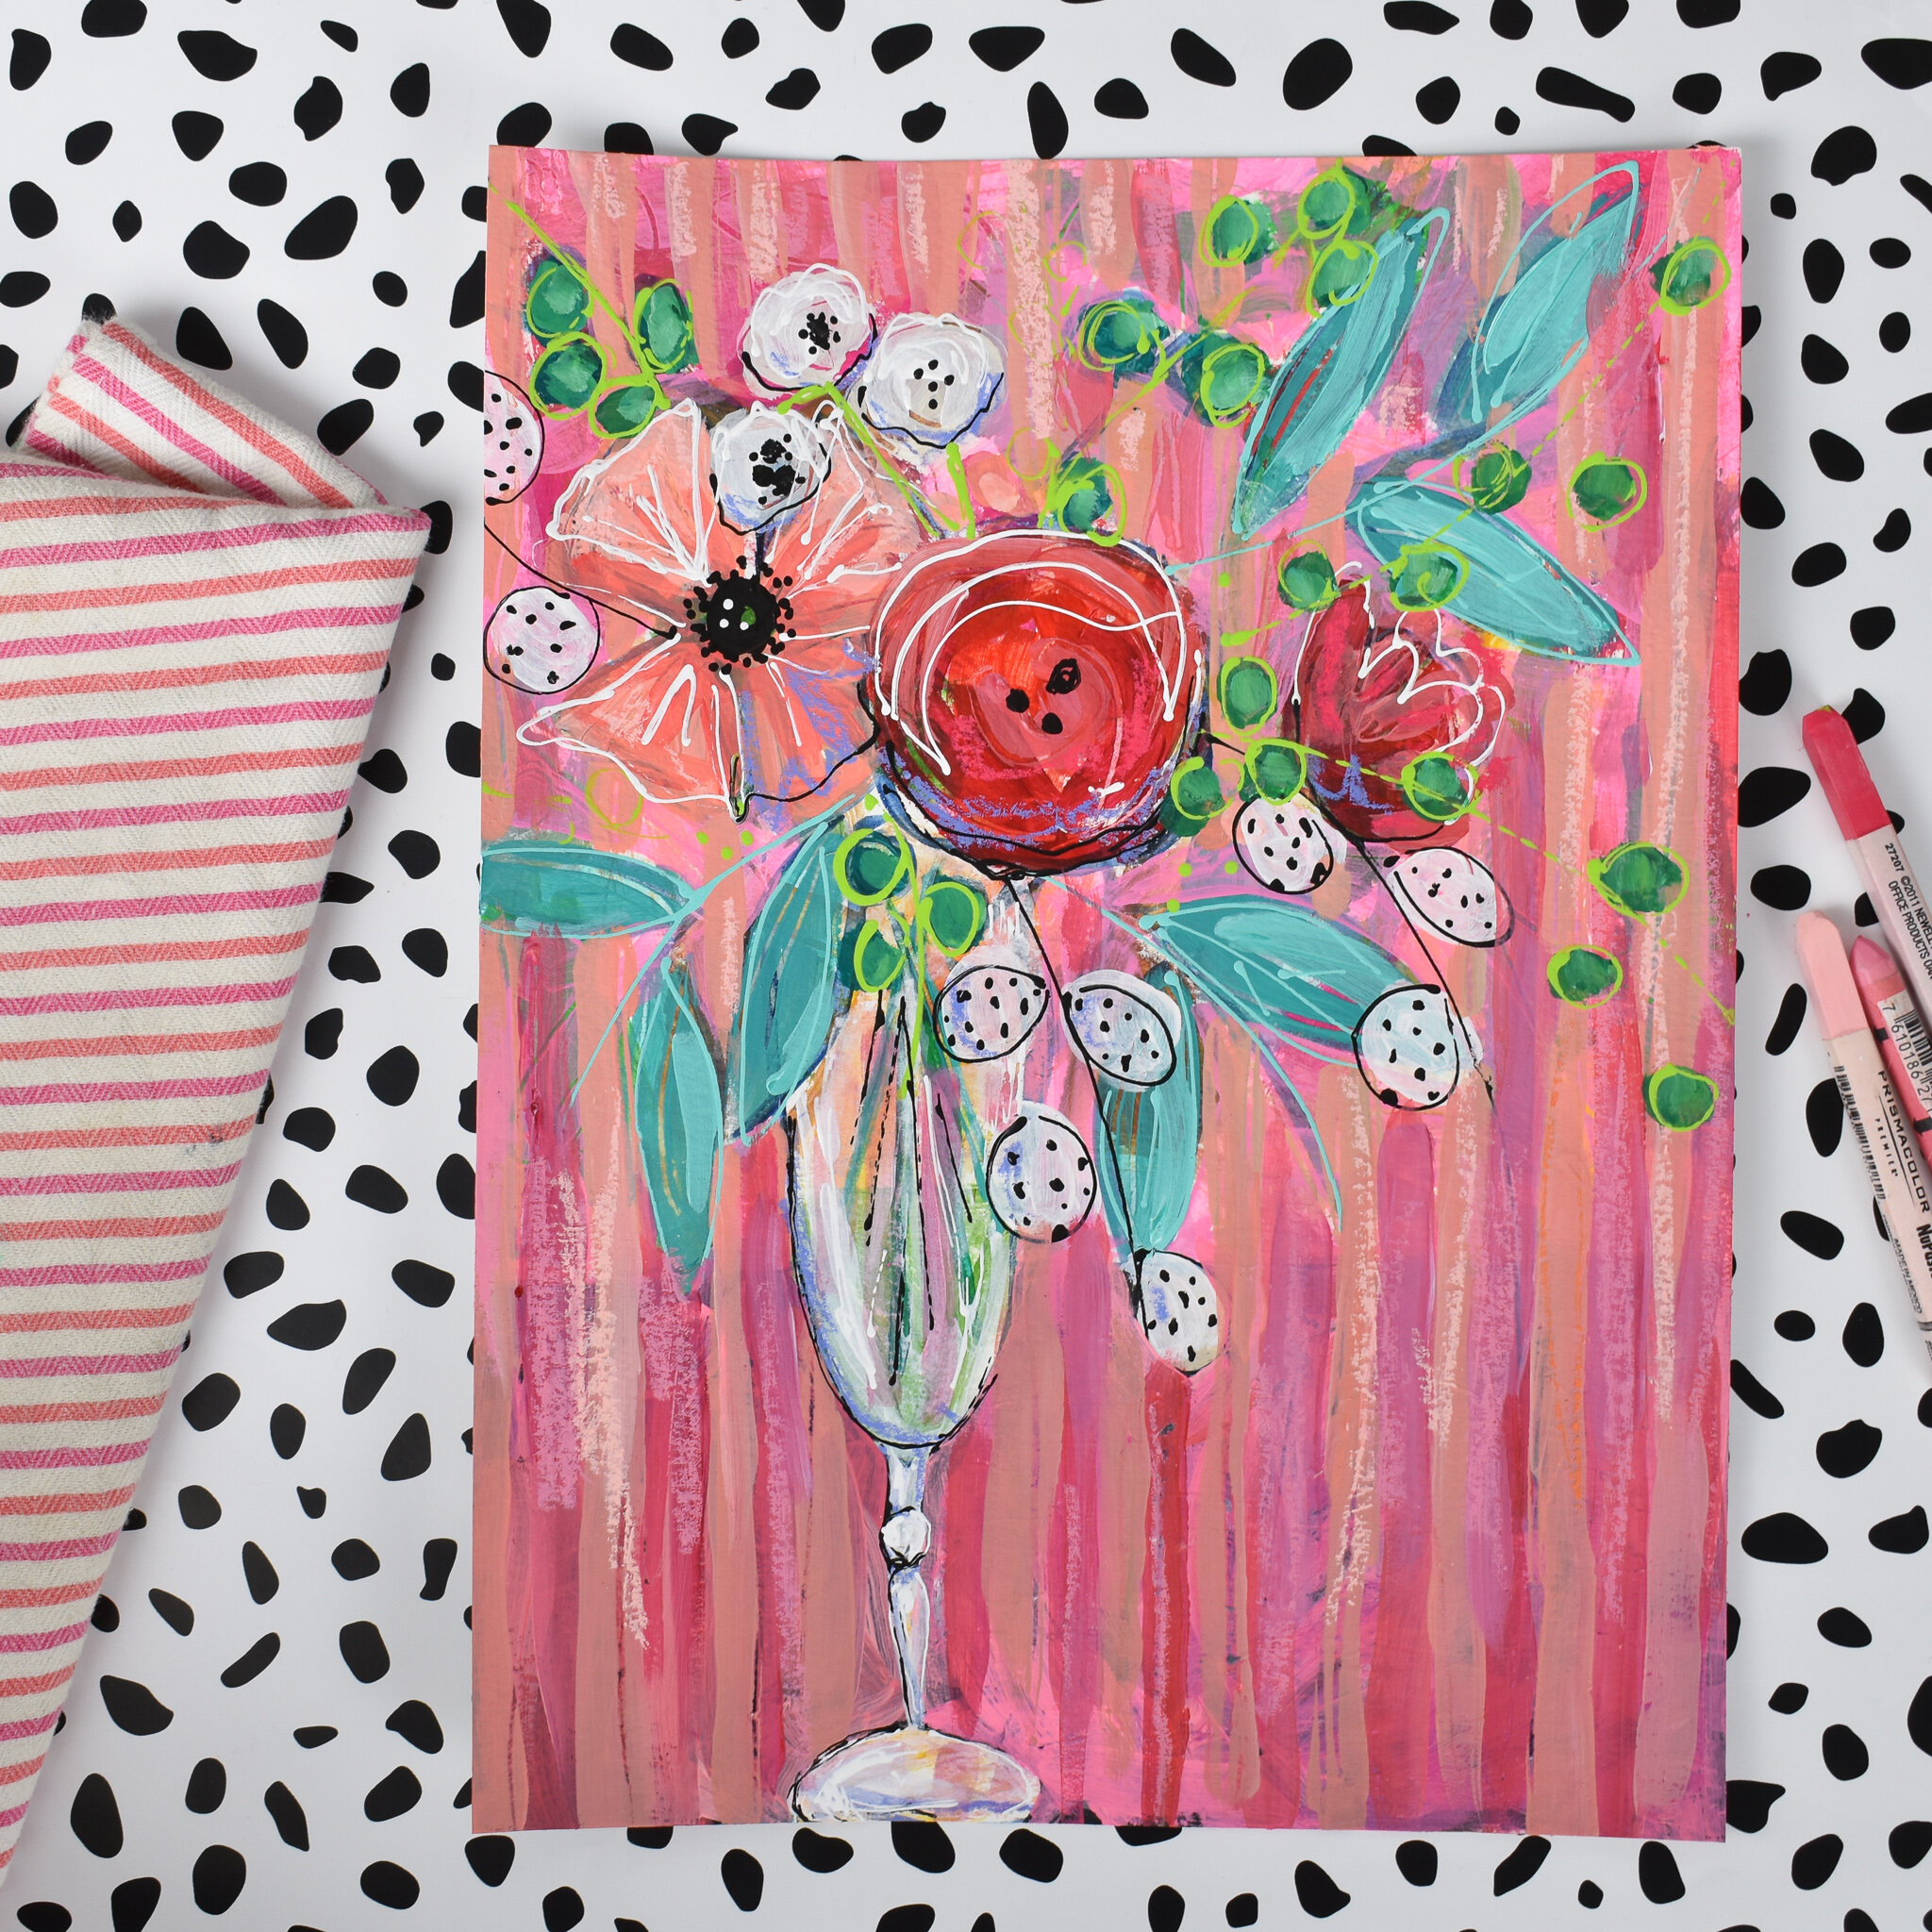 bohoflowers_painting_pinkflowers_daisyfaithart_4.jpg